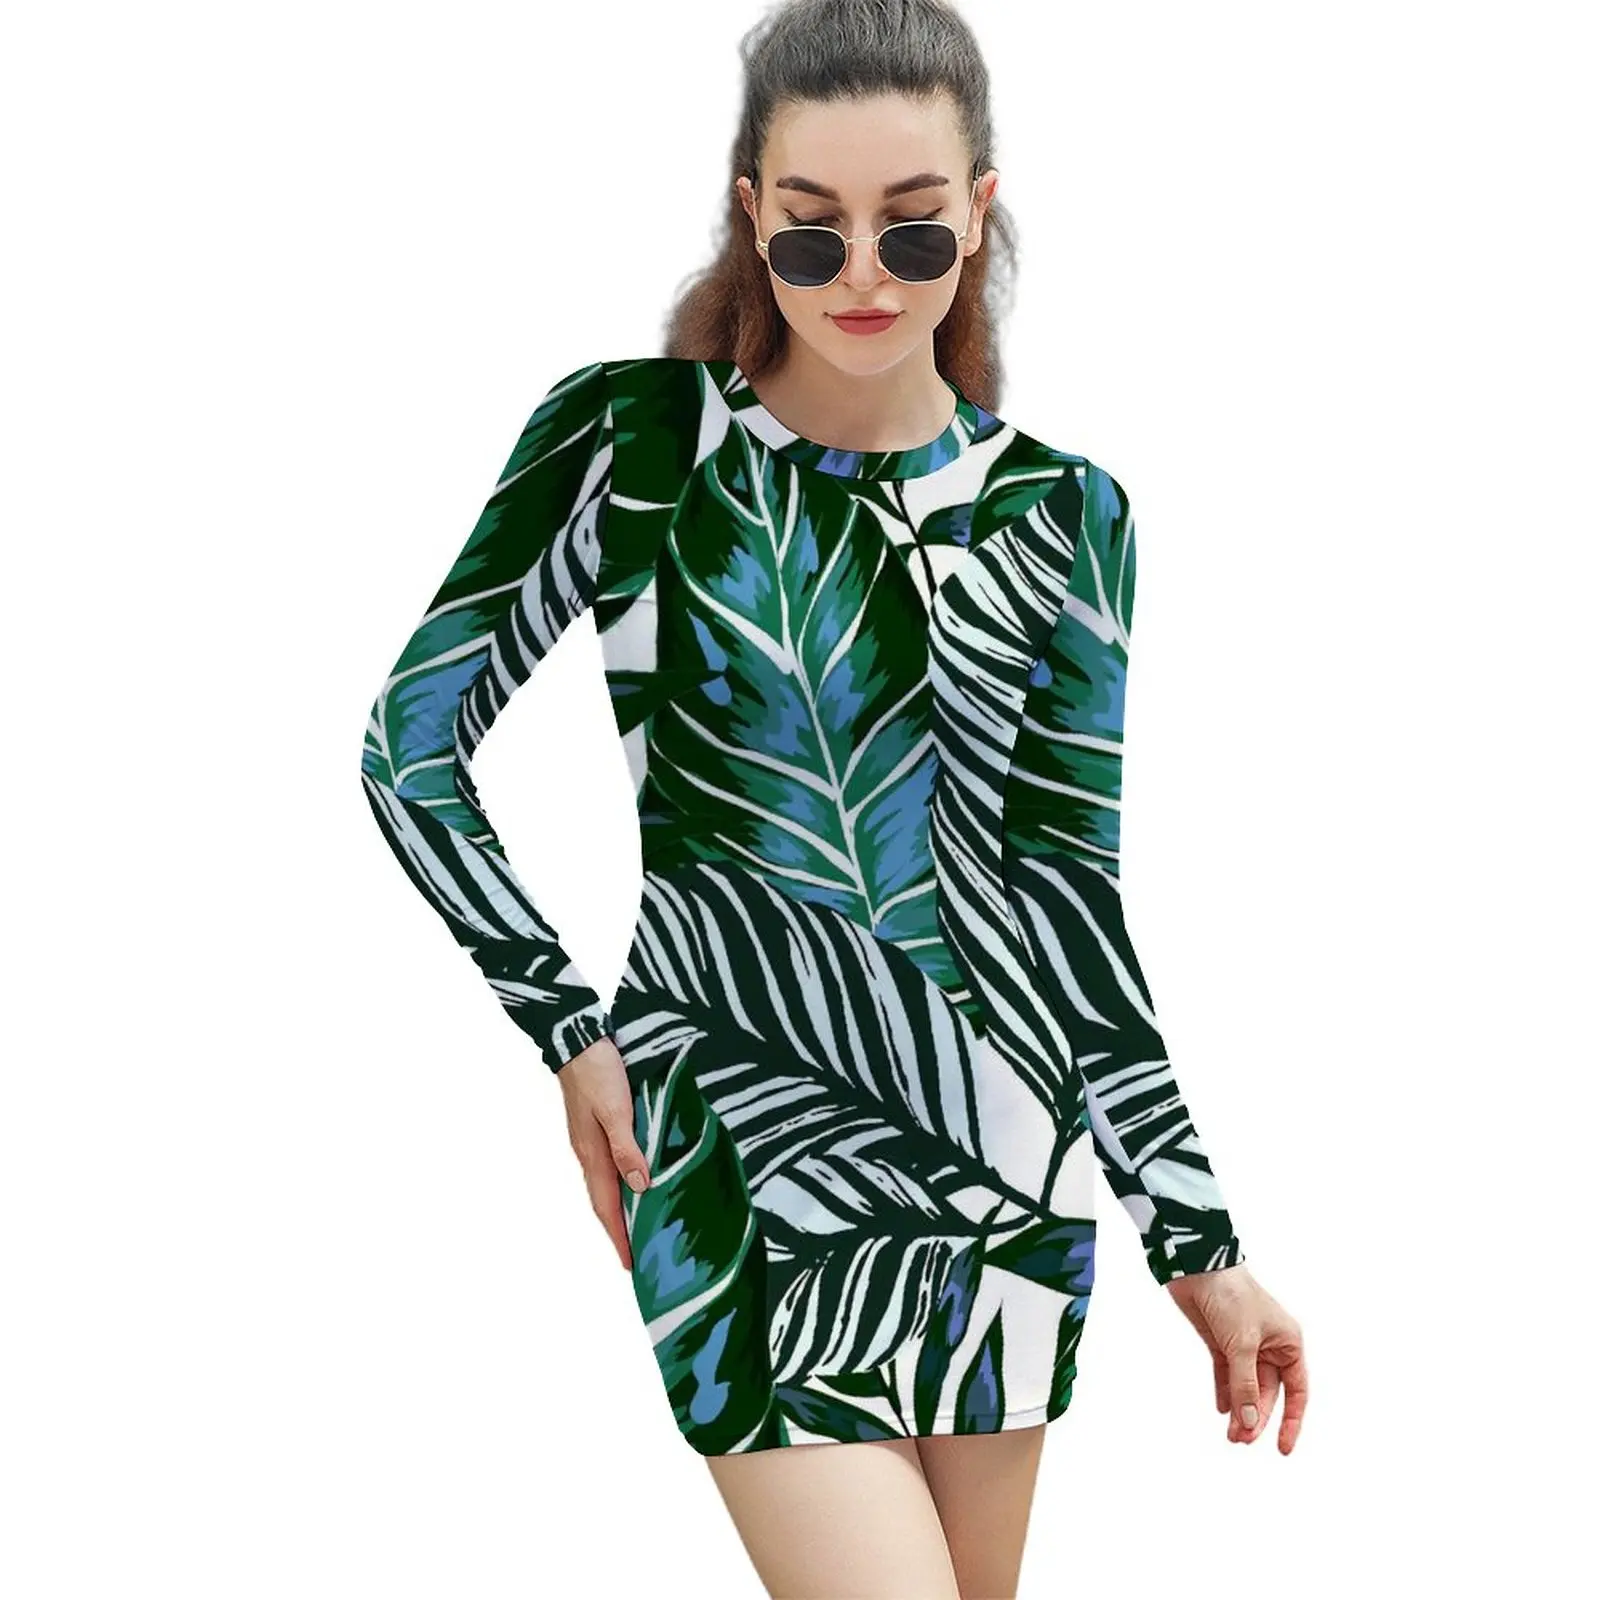 

Зеленое платье с пальмовыми листьями, простые весенние платья с длинным рукавом и принтом тропического леса, простое облегающее платье, жен...